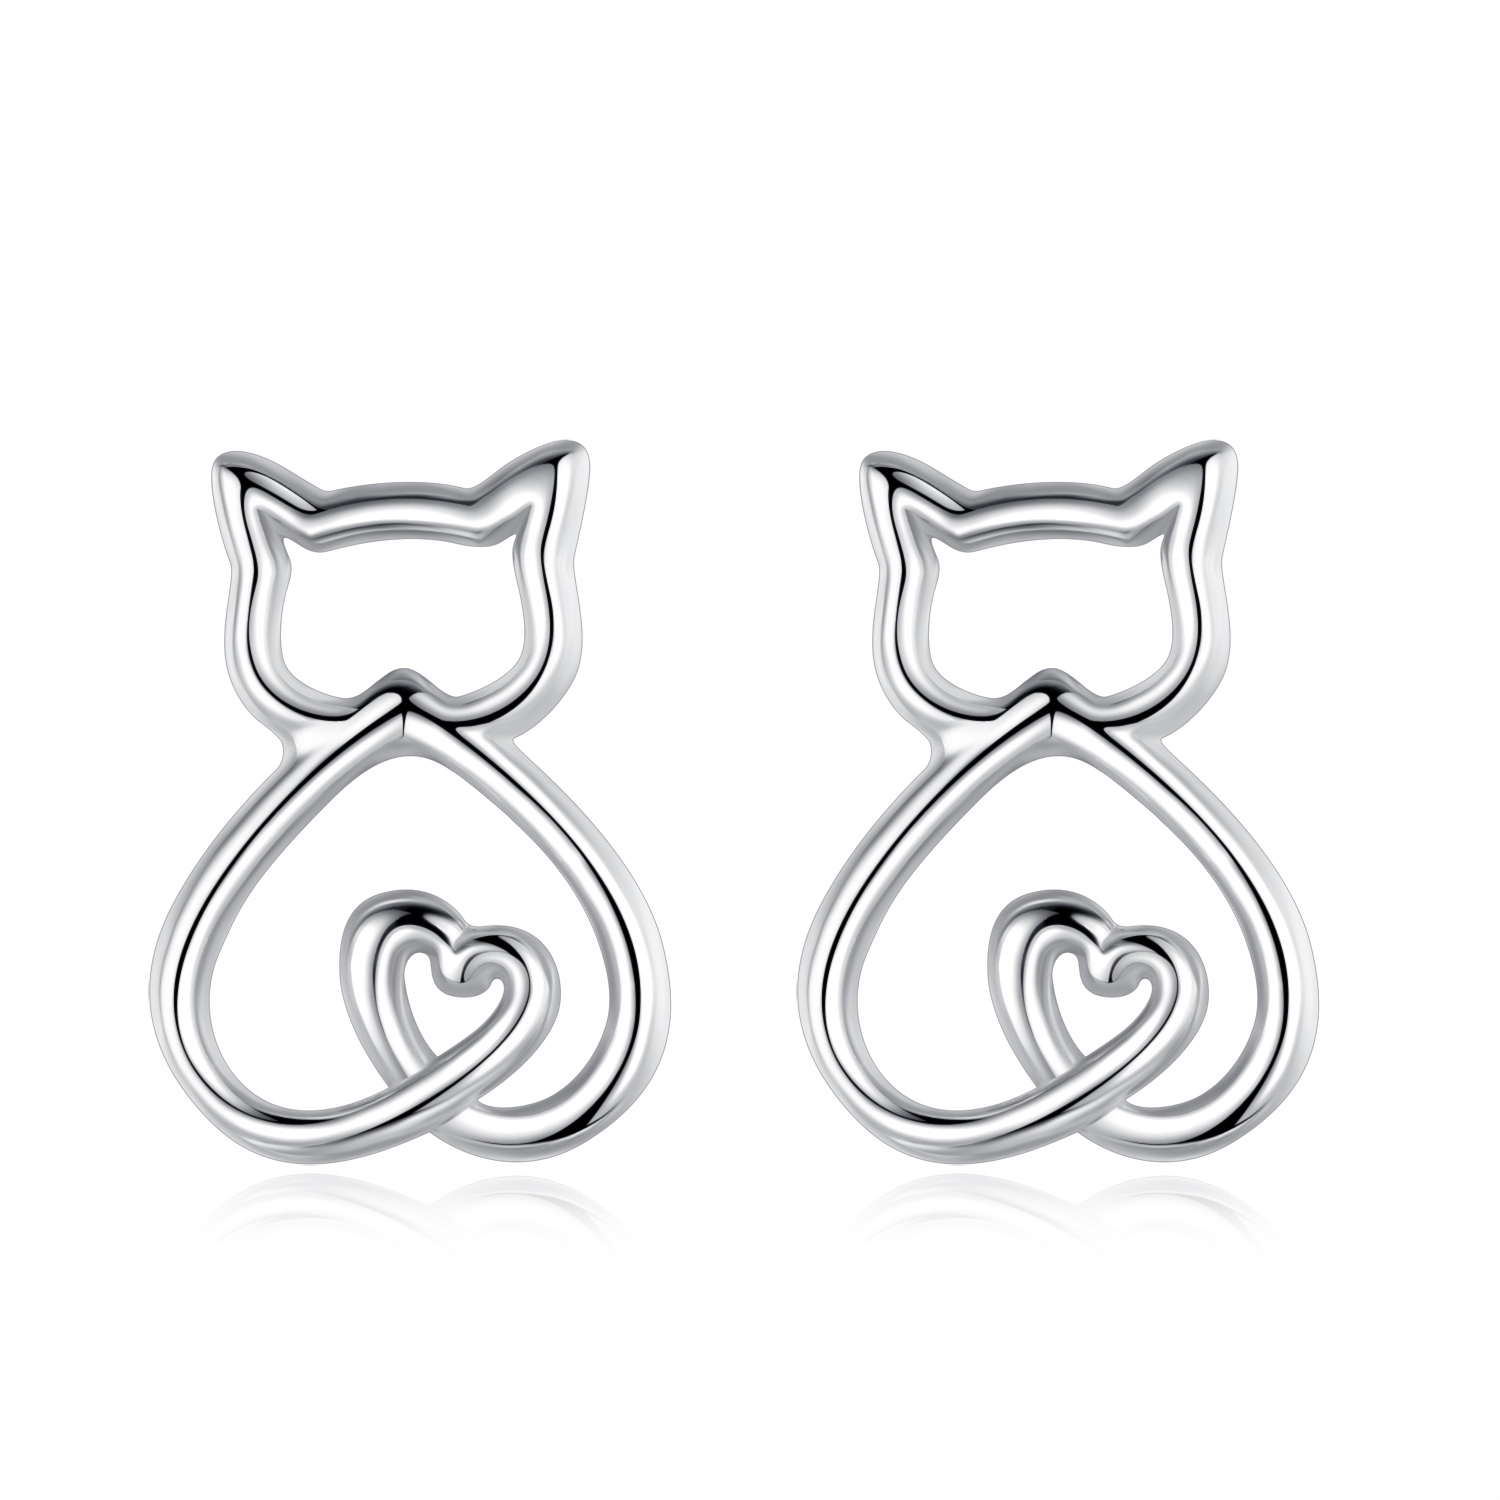 Minimalist Fashion S925 Sterling Silver Cute Cat Jewelry Stud Earrings